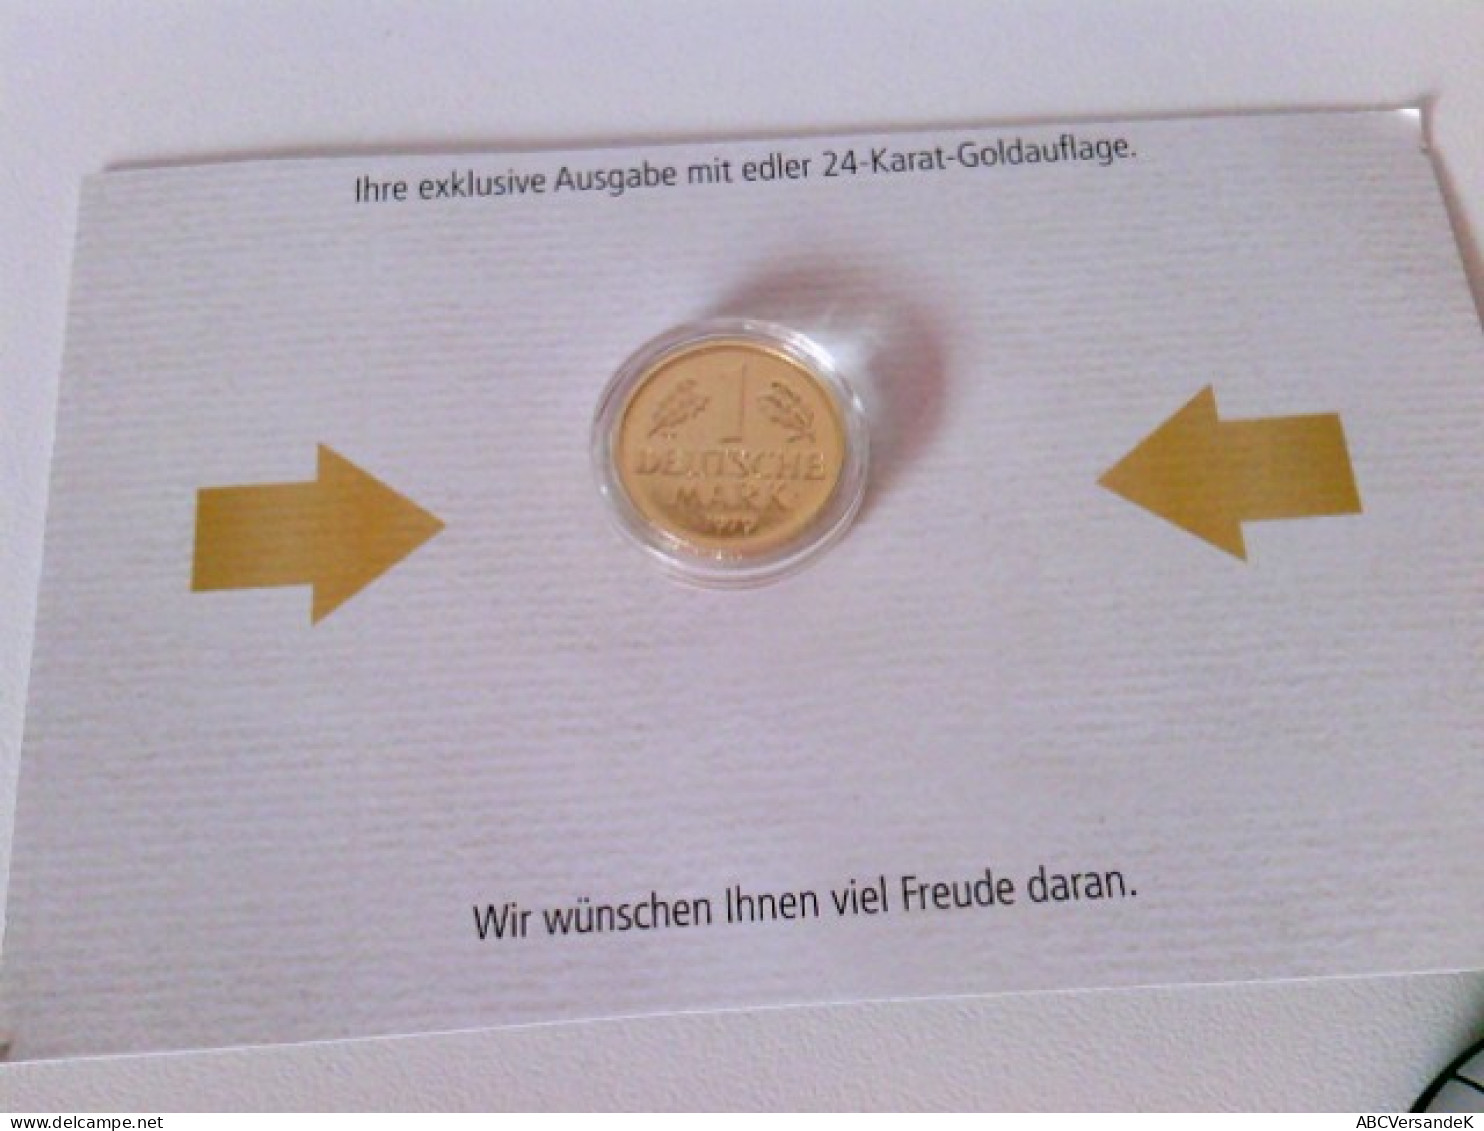 Münzen/ Medaillen: Hier 5 X 1 DM 1971, 1979, 1980, 1990, 1991 Vergoldet, Deutsche Mark Mit 24 Karat Goldauflag - Numismatik